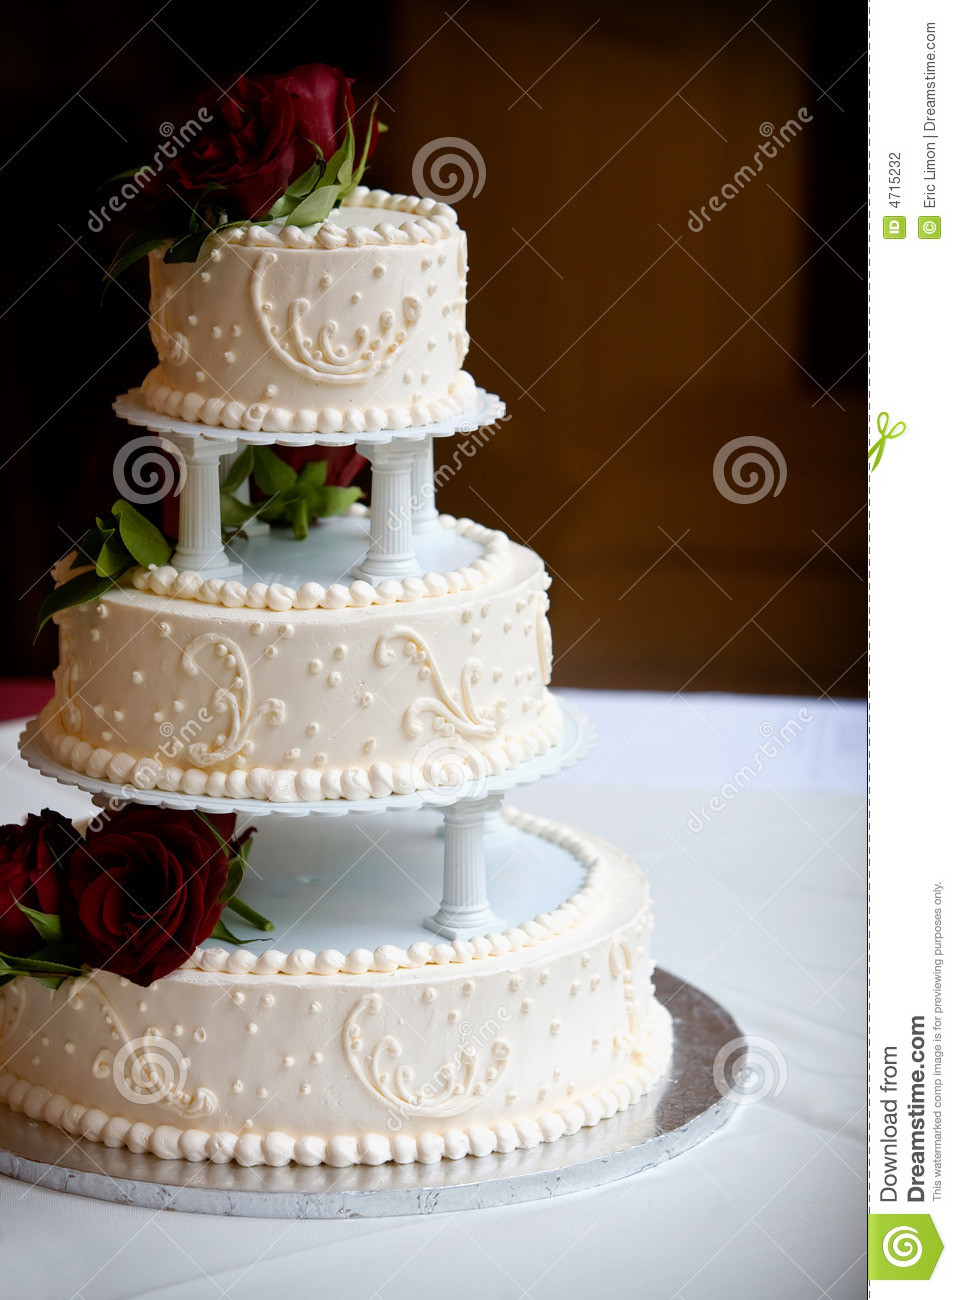 Top Tier Wedding Cakes
 Top tier wedding cakes idea in 2017